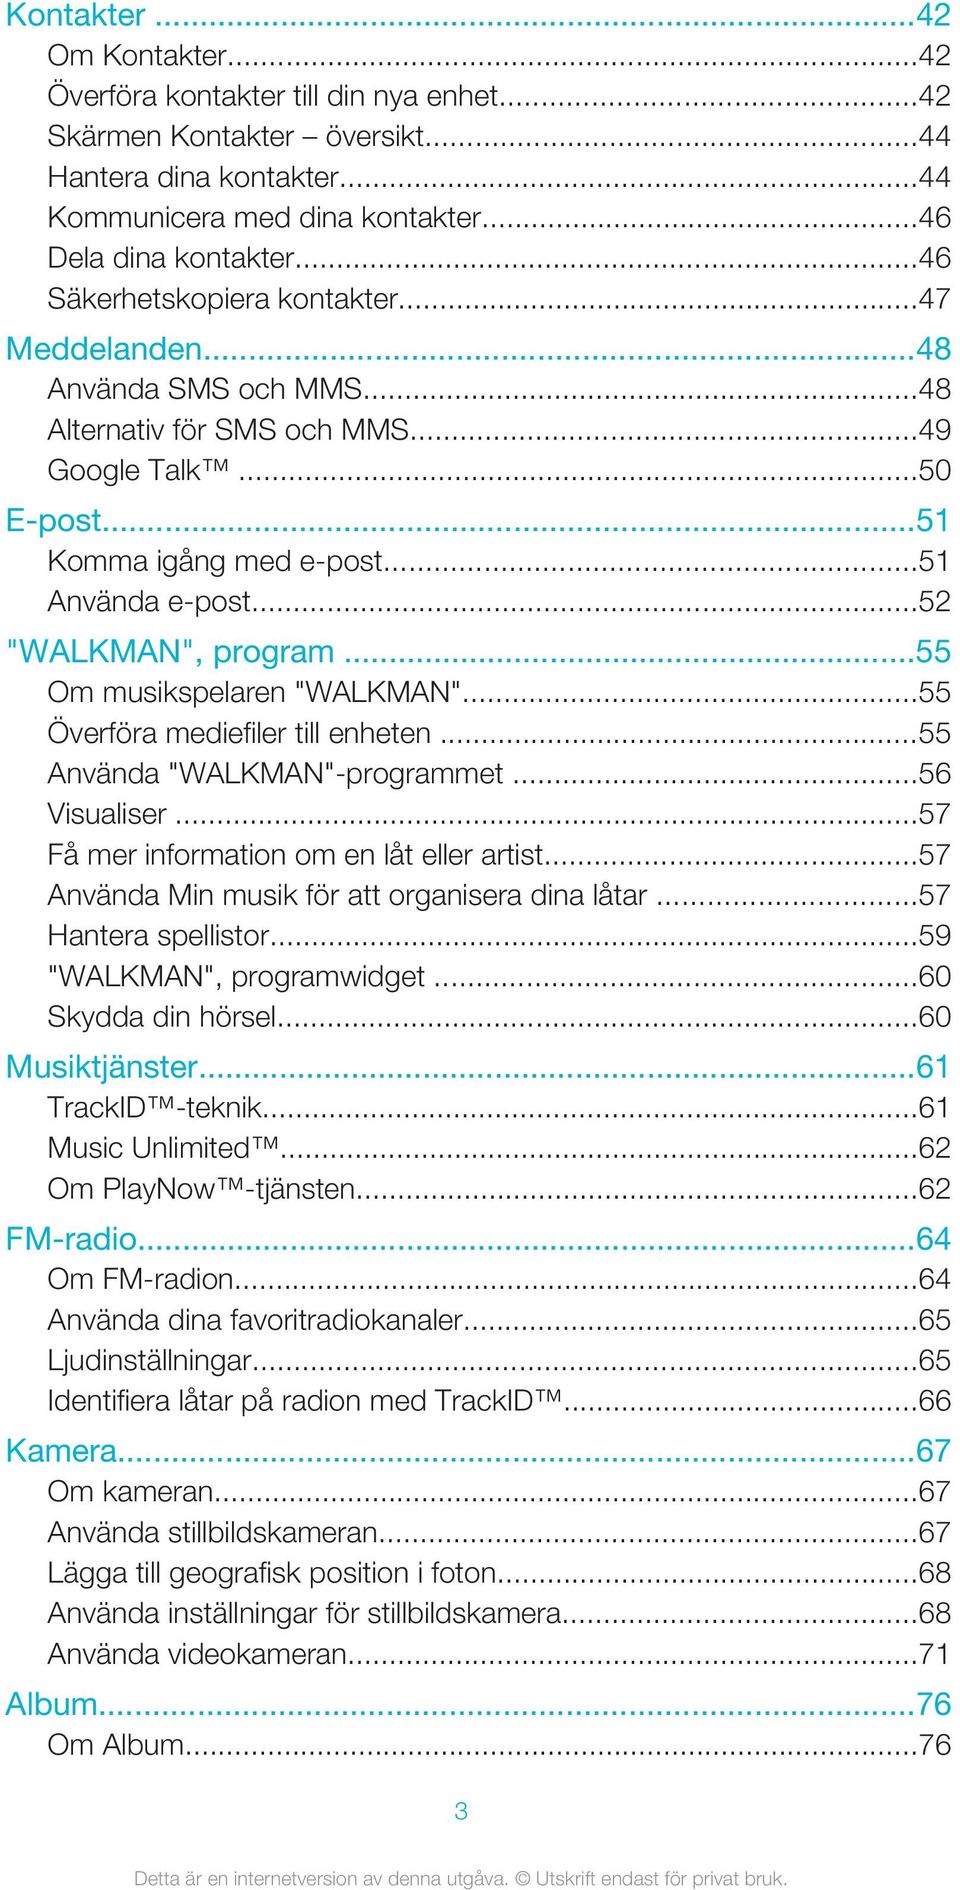 ..52 "WALKMAN", program...55 Om musikspelaren "WALKMAN"...55 Överföra mediefiler till enheten...55 Använda "WALKMAN"-programmet...56 Visualiser...57 Få mer information om en låt eller artist.